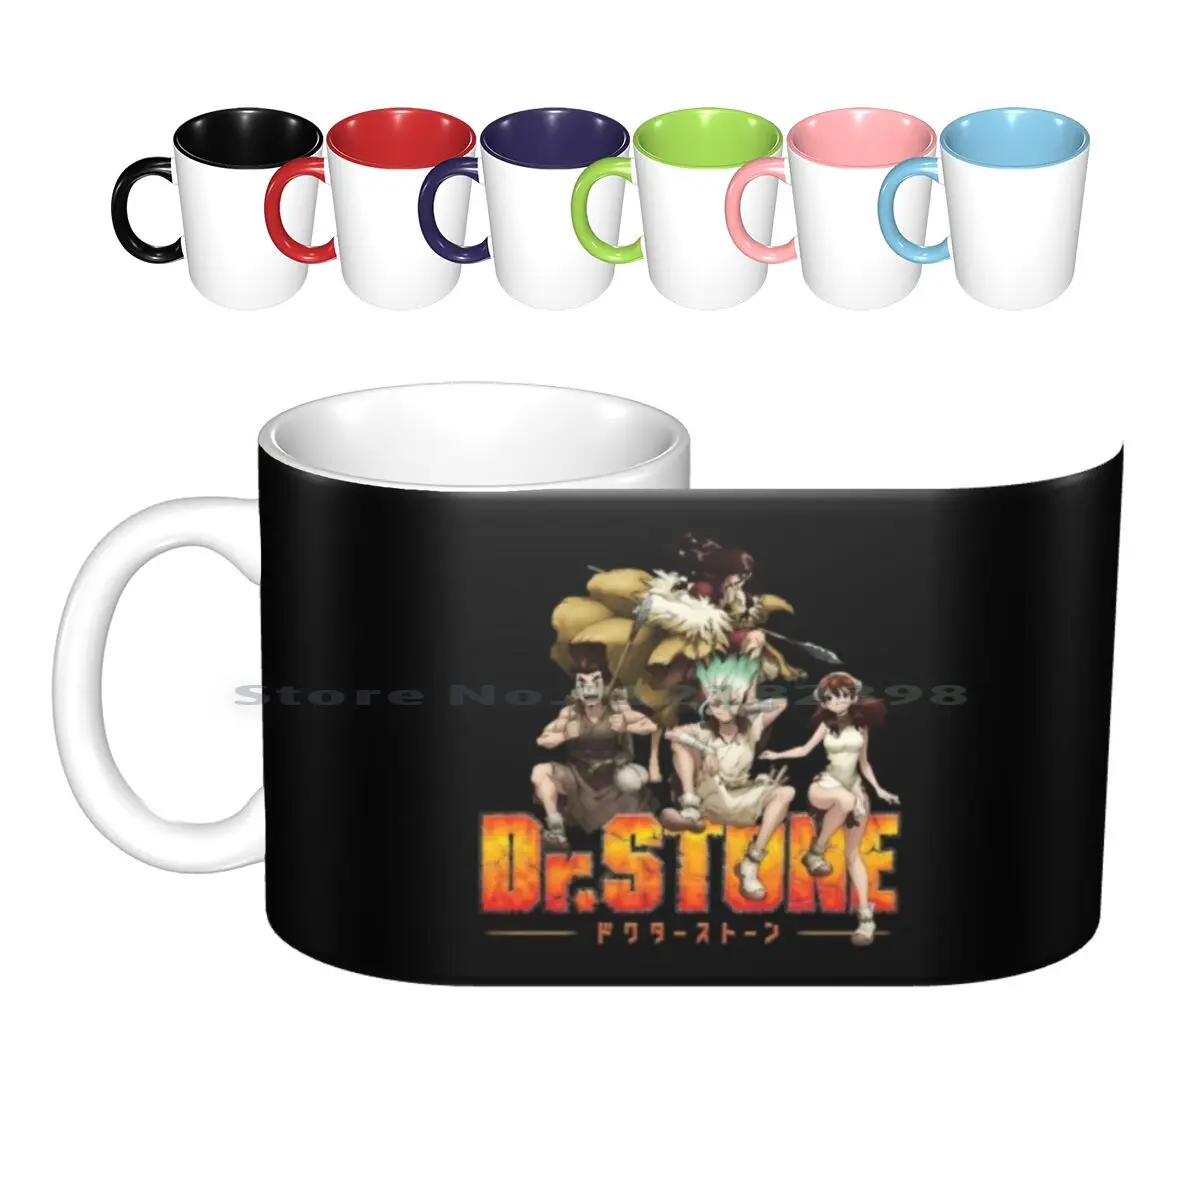 

Керамические кружки Dr Stone, кофейные чашки, Кружка для молока и чая, кружка Dr Stone, аниме Senku Ishigami Dr Stone, аниме креативный трендовый винтажный